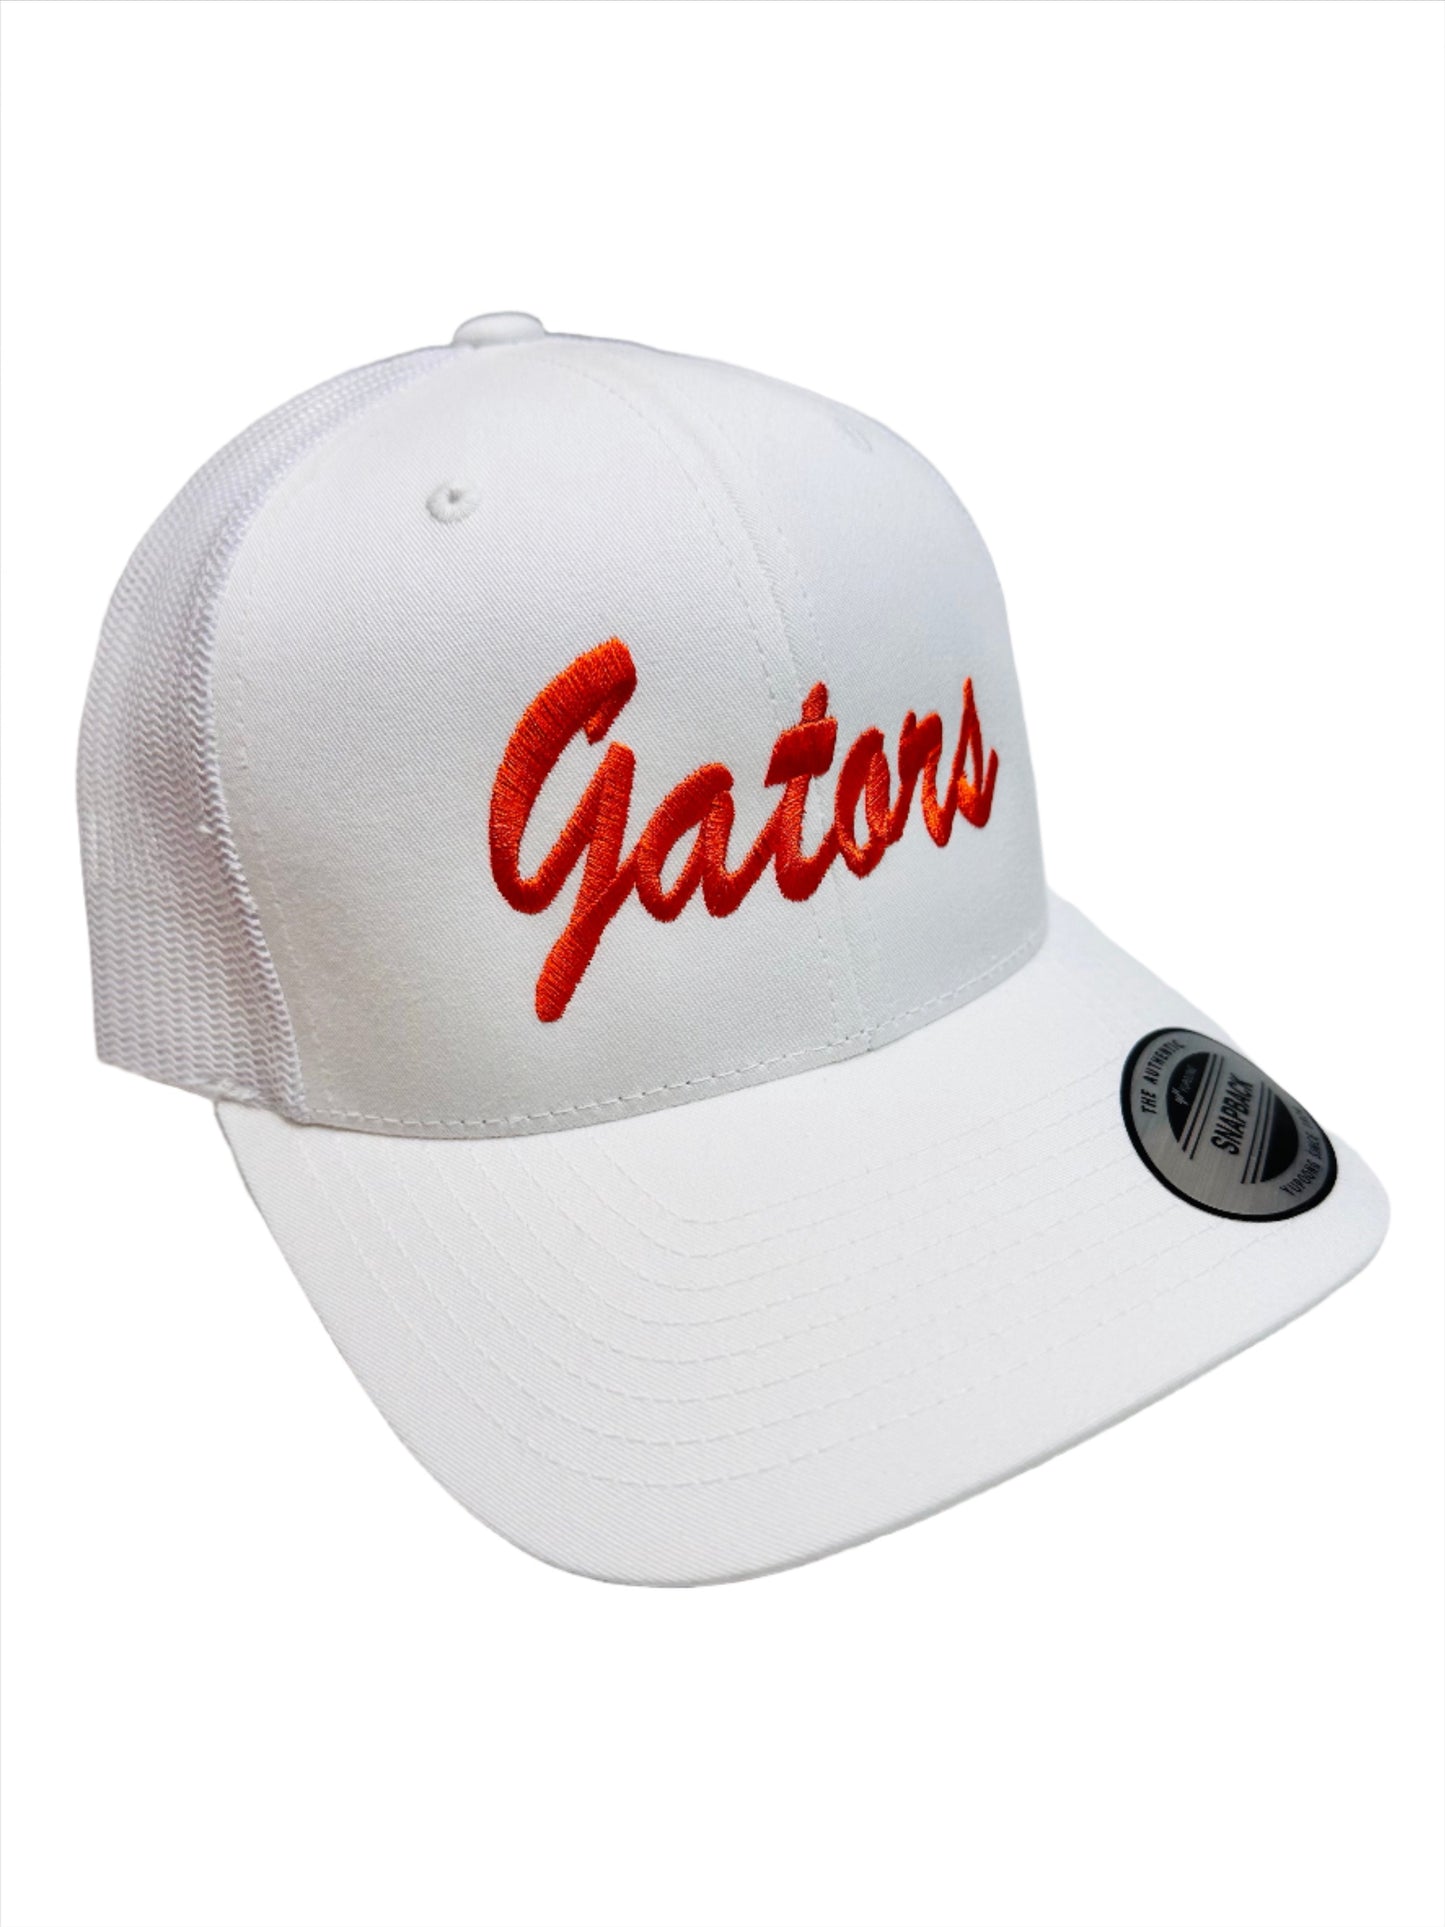 FL Gators Hat